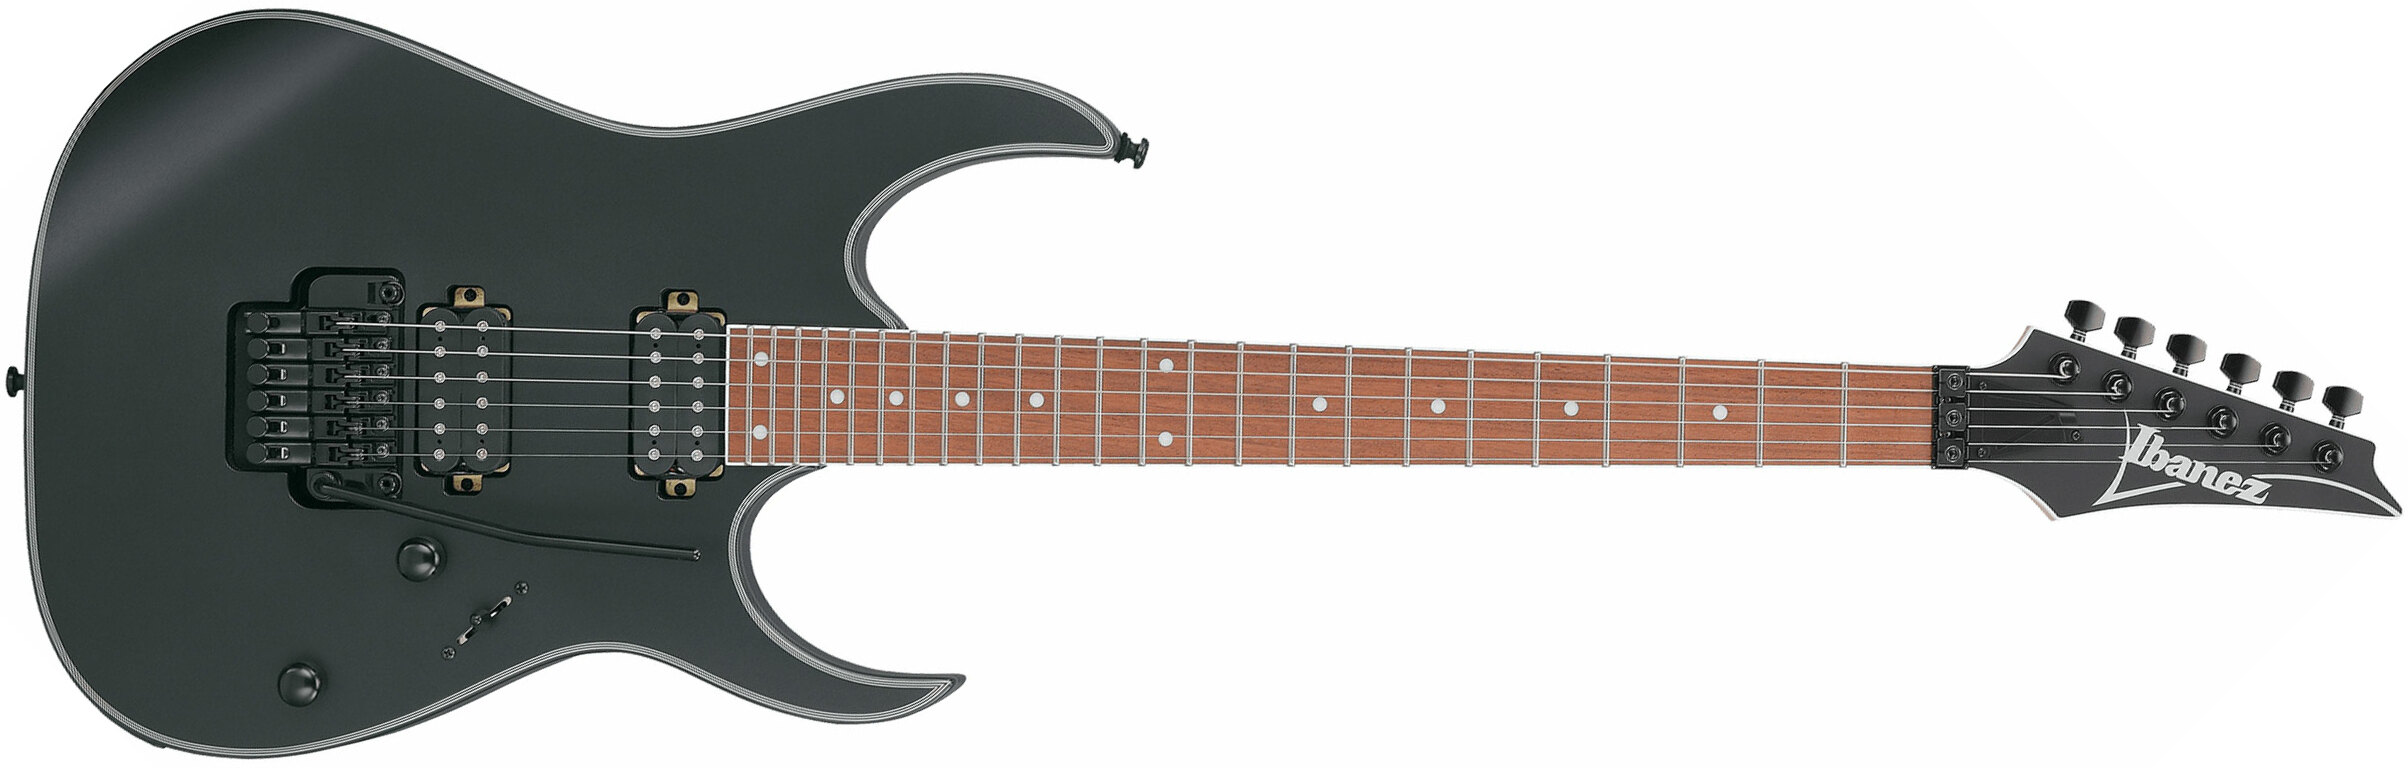 Ibanez Rg420ex Bkf Standard 2h Fr Jat - Black Flat - Elektrische gitaar in Str-vorm - Main picture